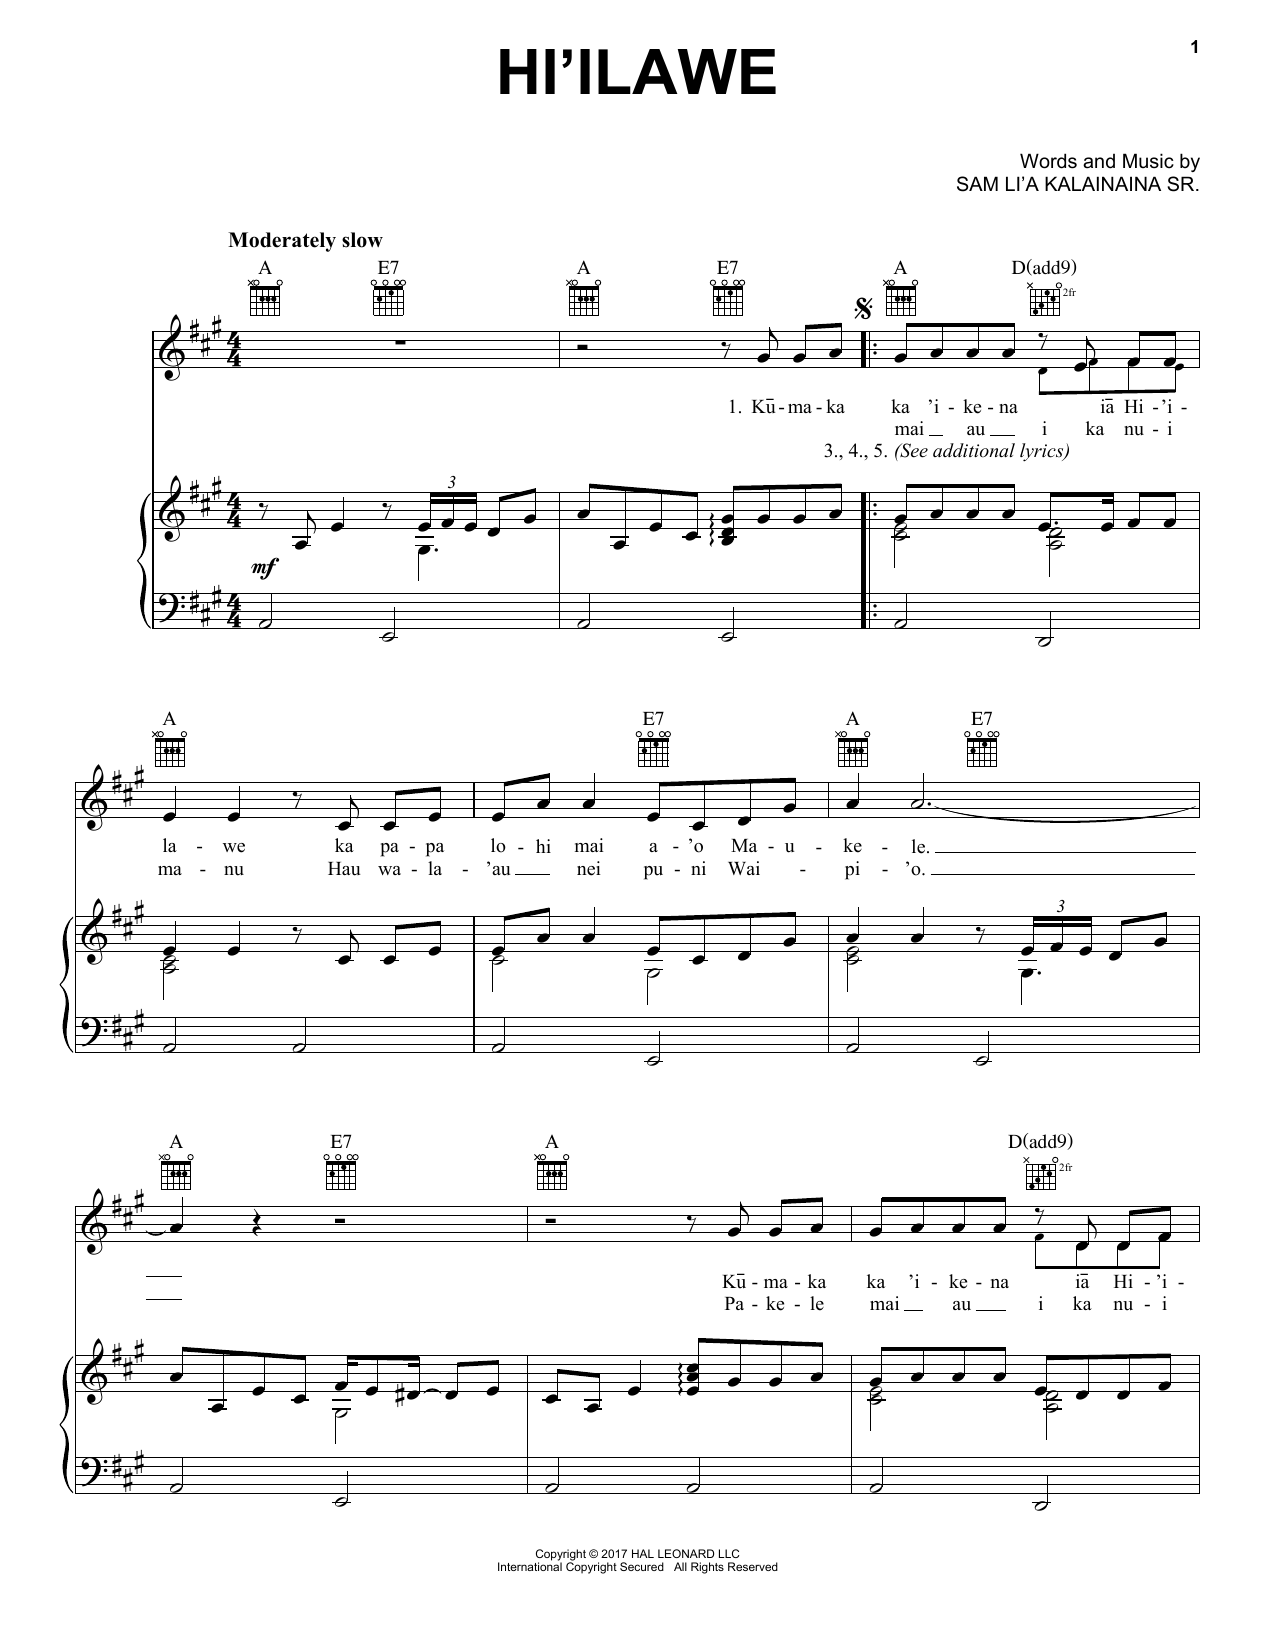 Sam Li'a Kalainaina Sr. Hi'ilawe sheet music notes and chords arranged for Piano, Vocal & Guitar Chords (Right-Hand Melody)